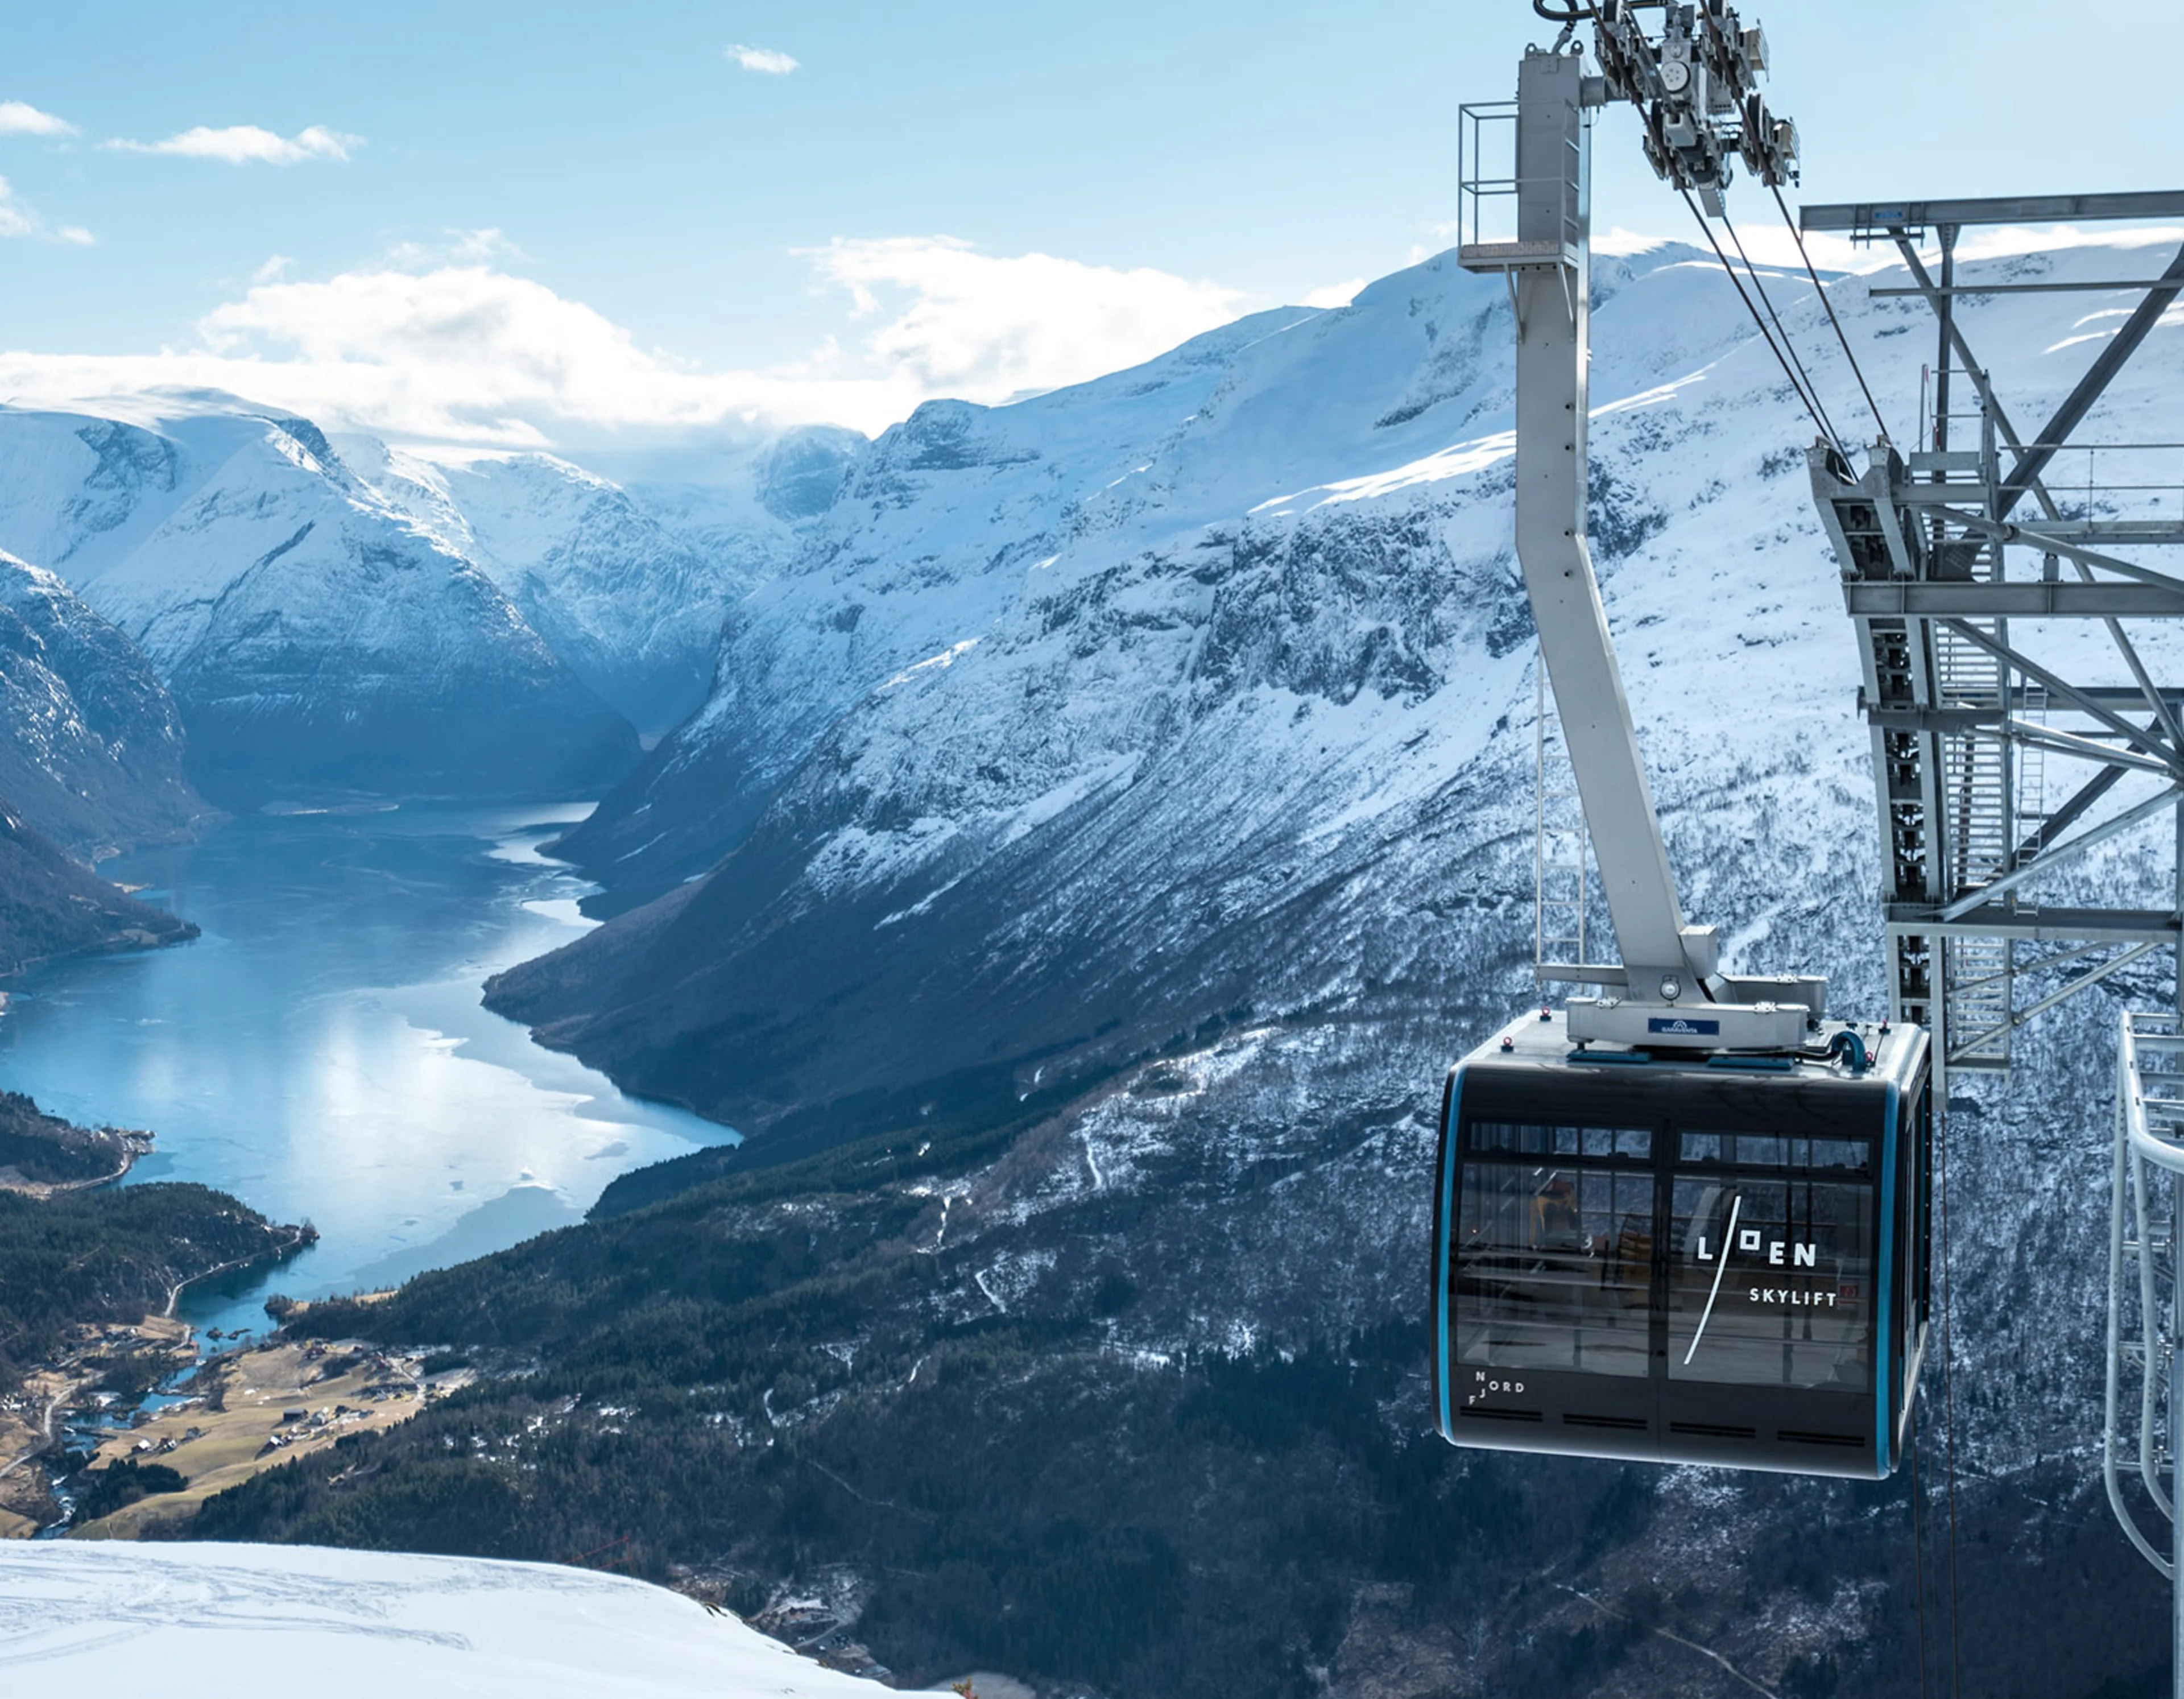 Snow-covered mountain scene and Loen Skylift, Nordfjorden